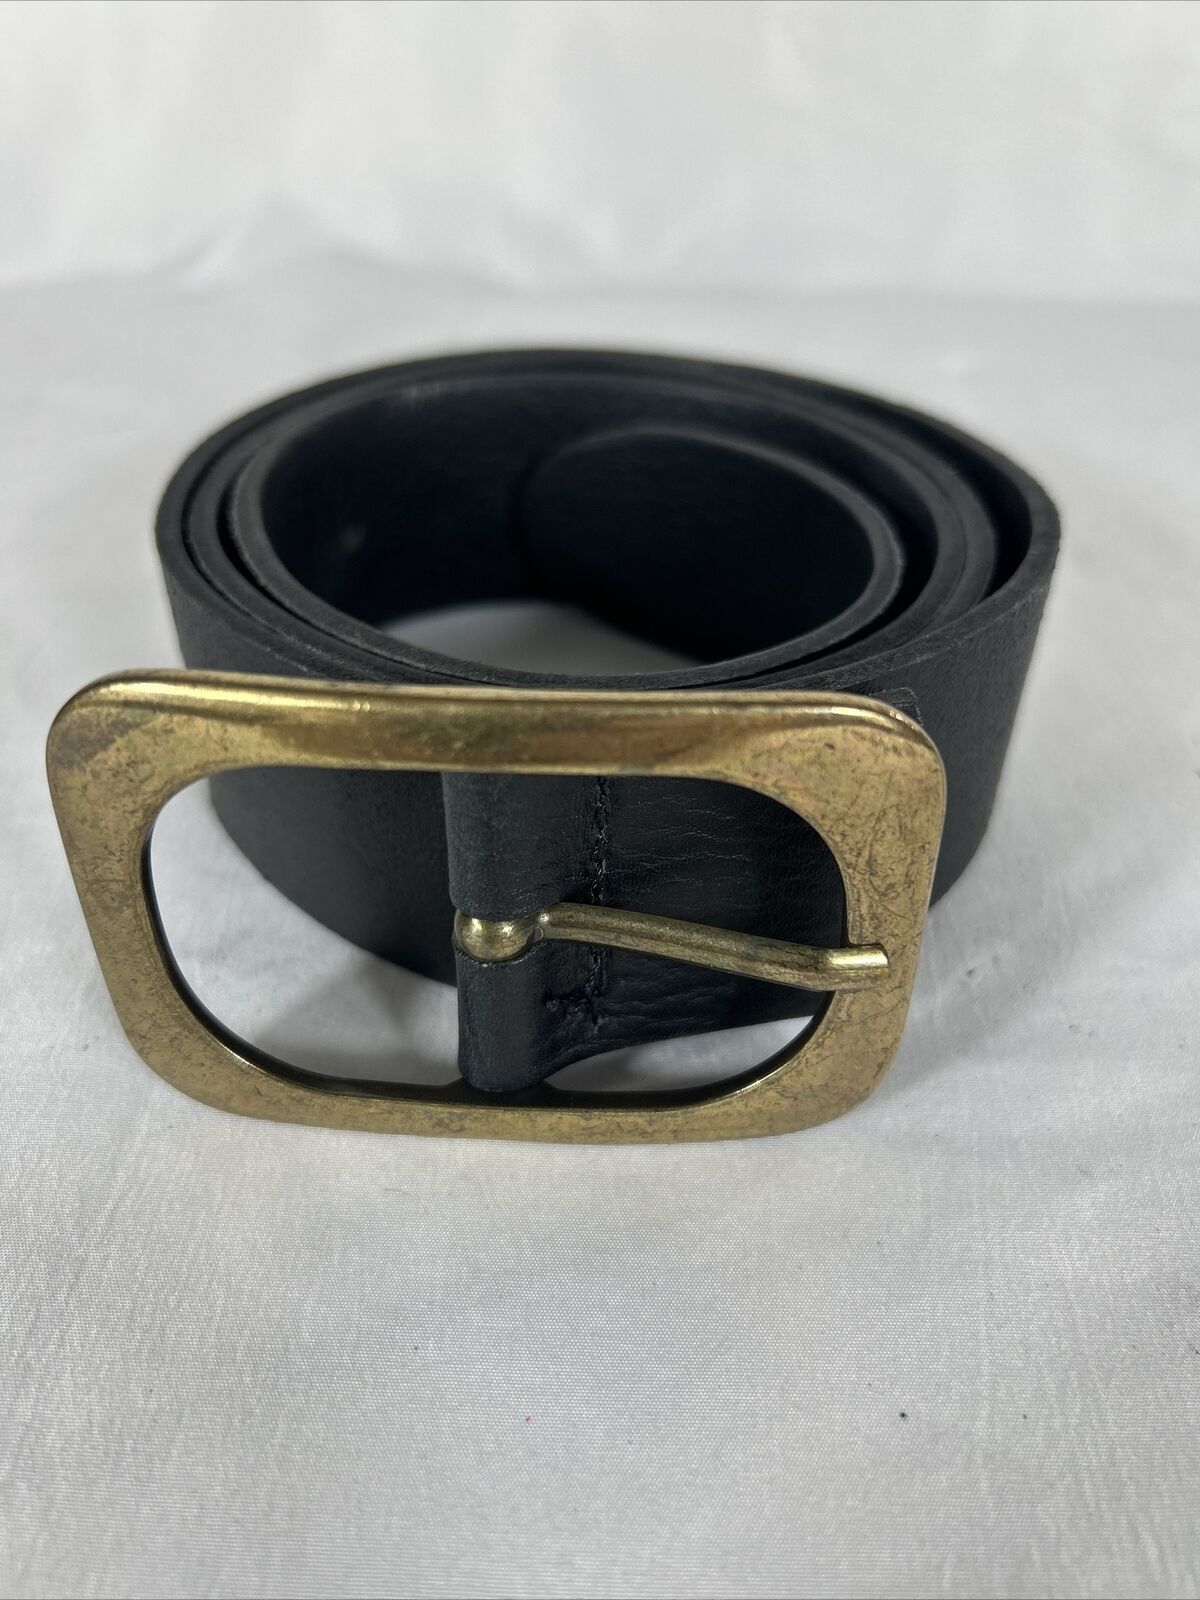 Amsterdam Heritage Belt - Black Leather Belt Made in Netherlands 95 Large